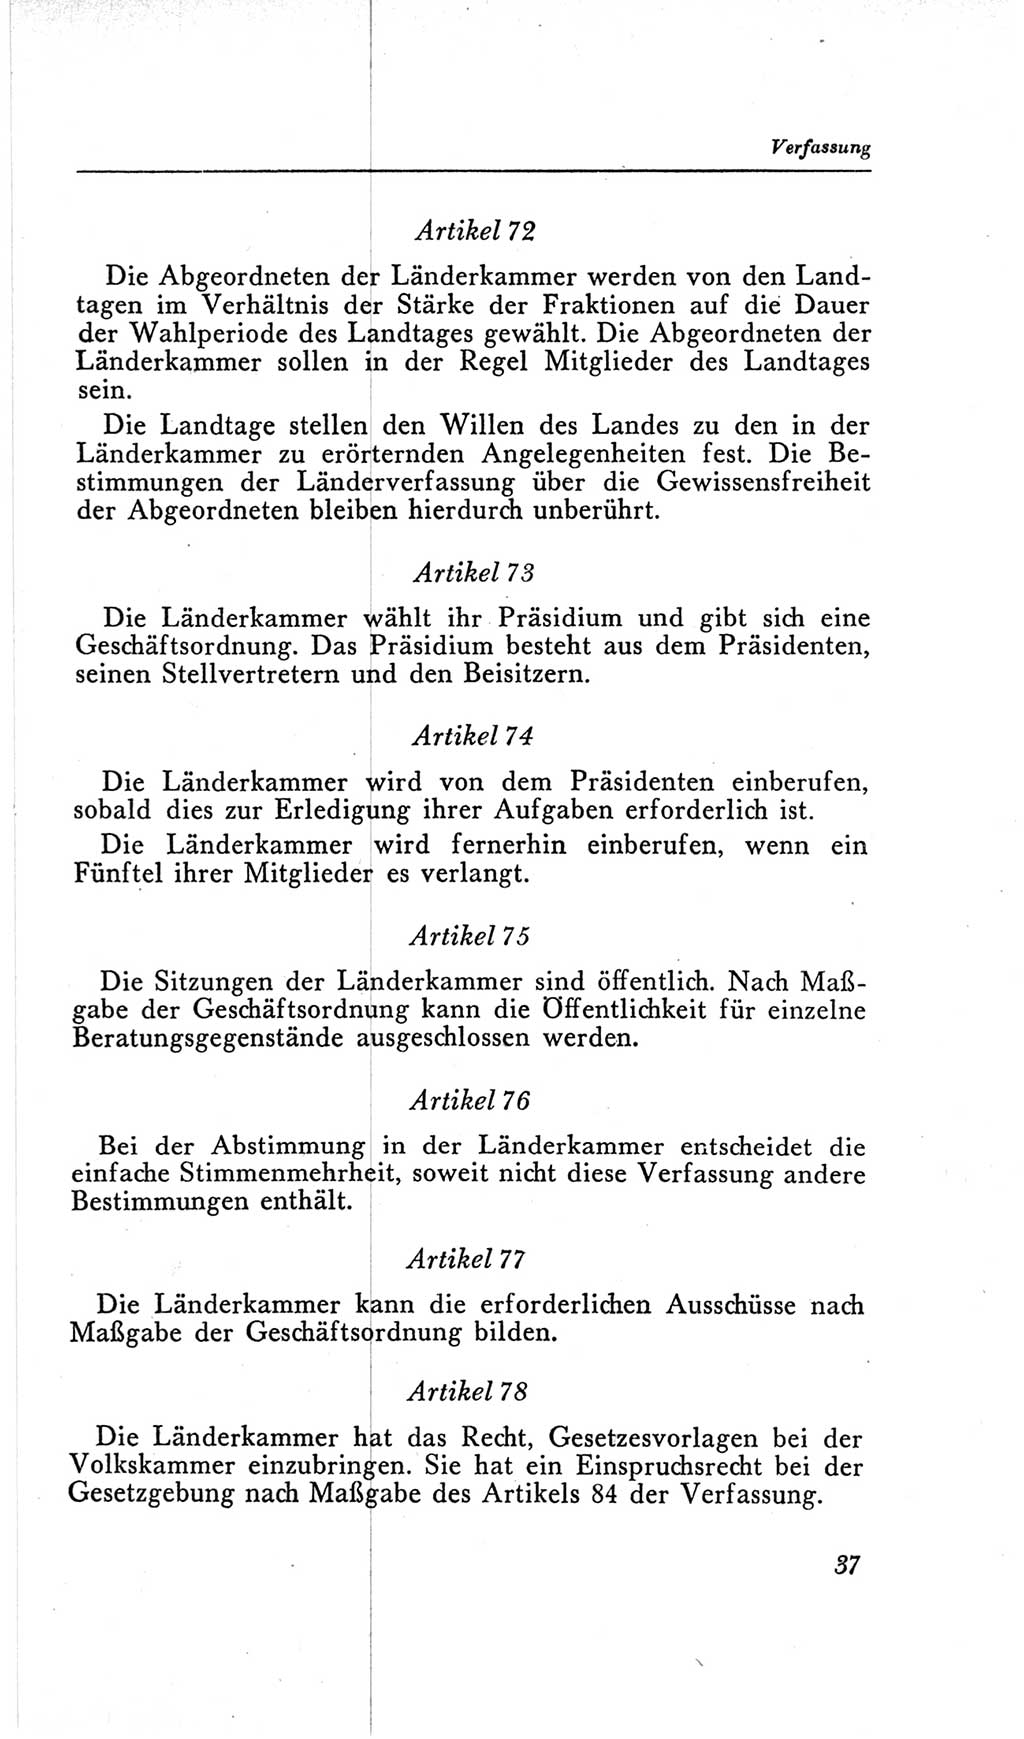 Handbuch der Volkskammer (VK) der Deutschen Demokratischen Republik (DDR), 2. Wahlperiode 1954-1958, Seite 37 (Hdb. VK. DDR, 2. WP. 1954-1958, S. 37)